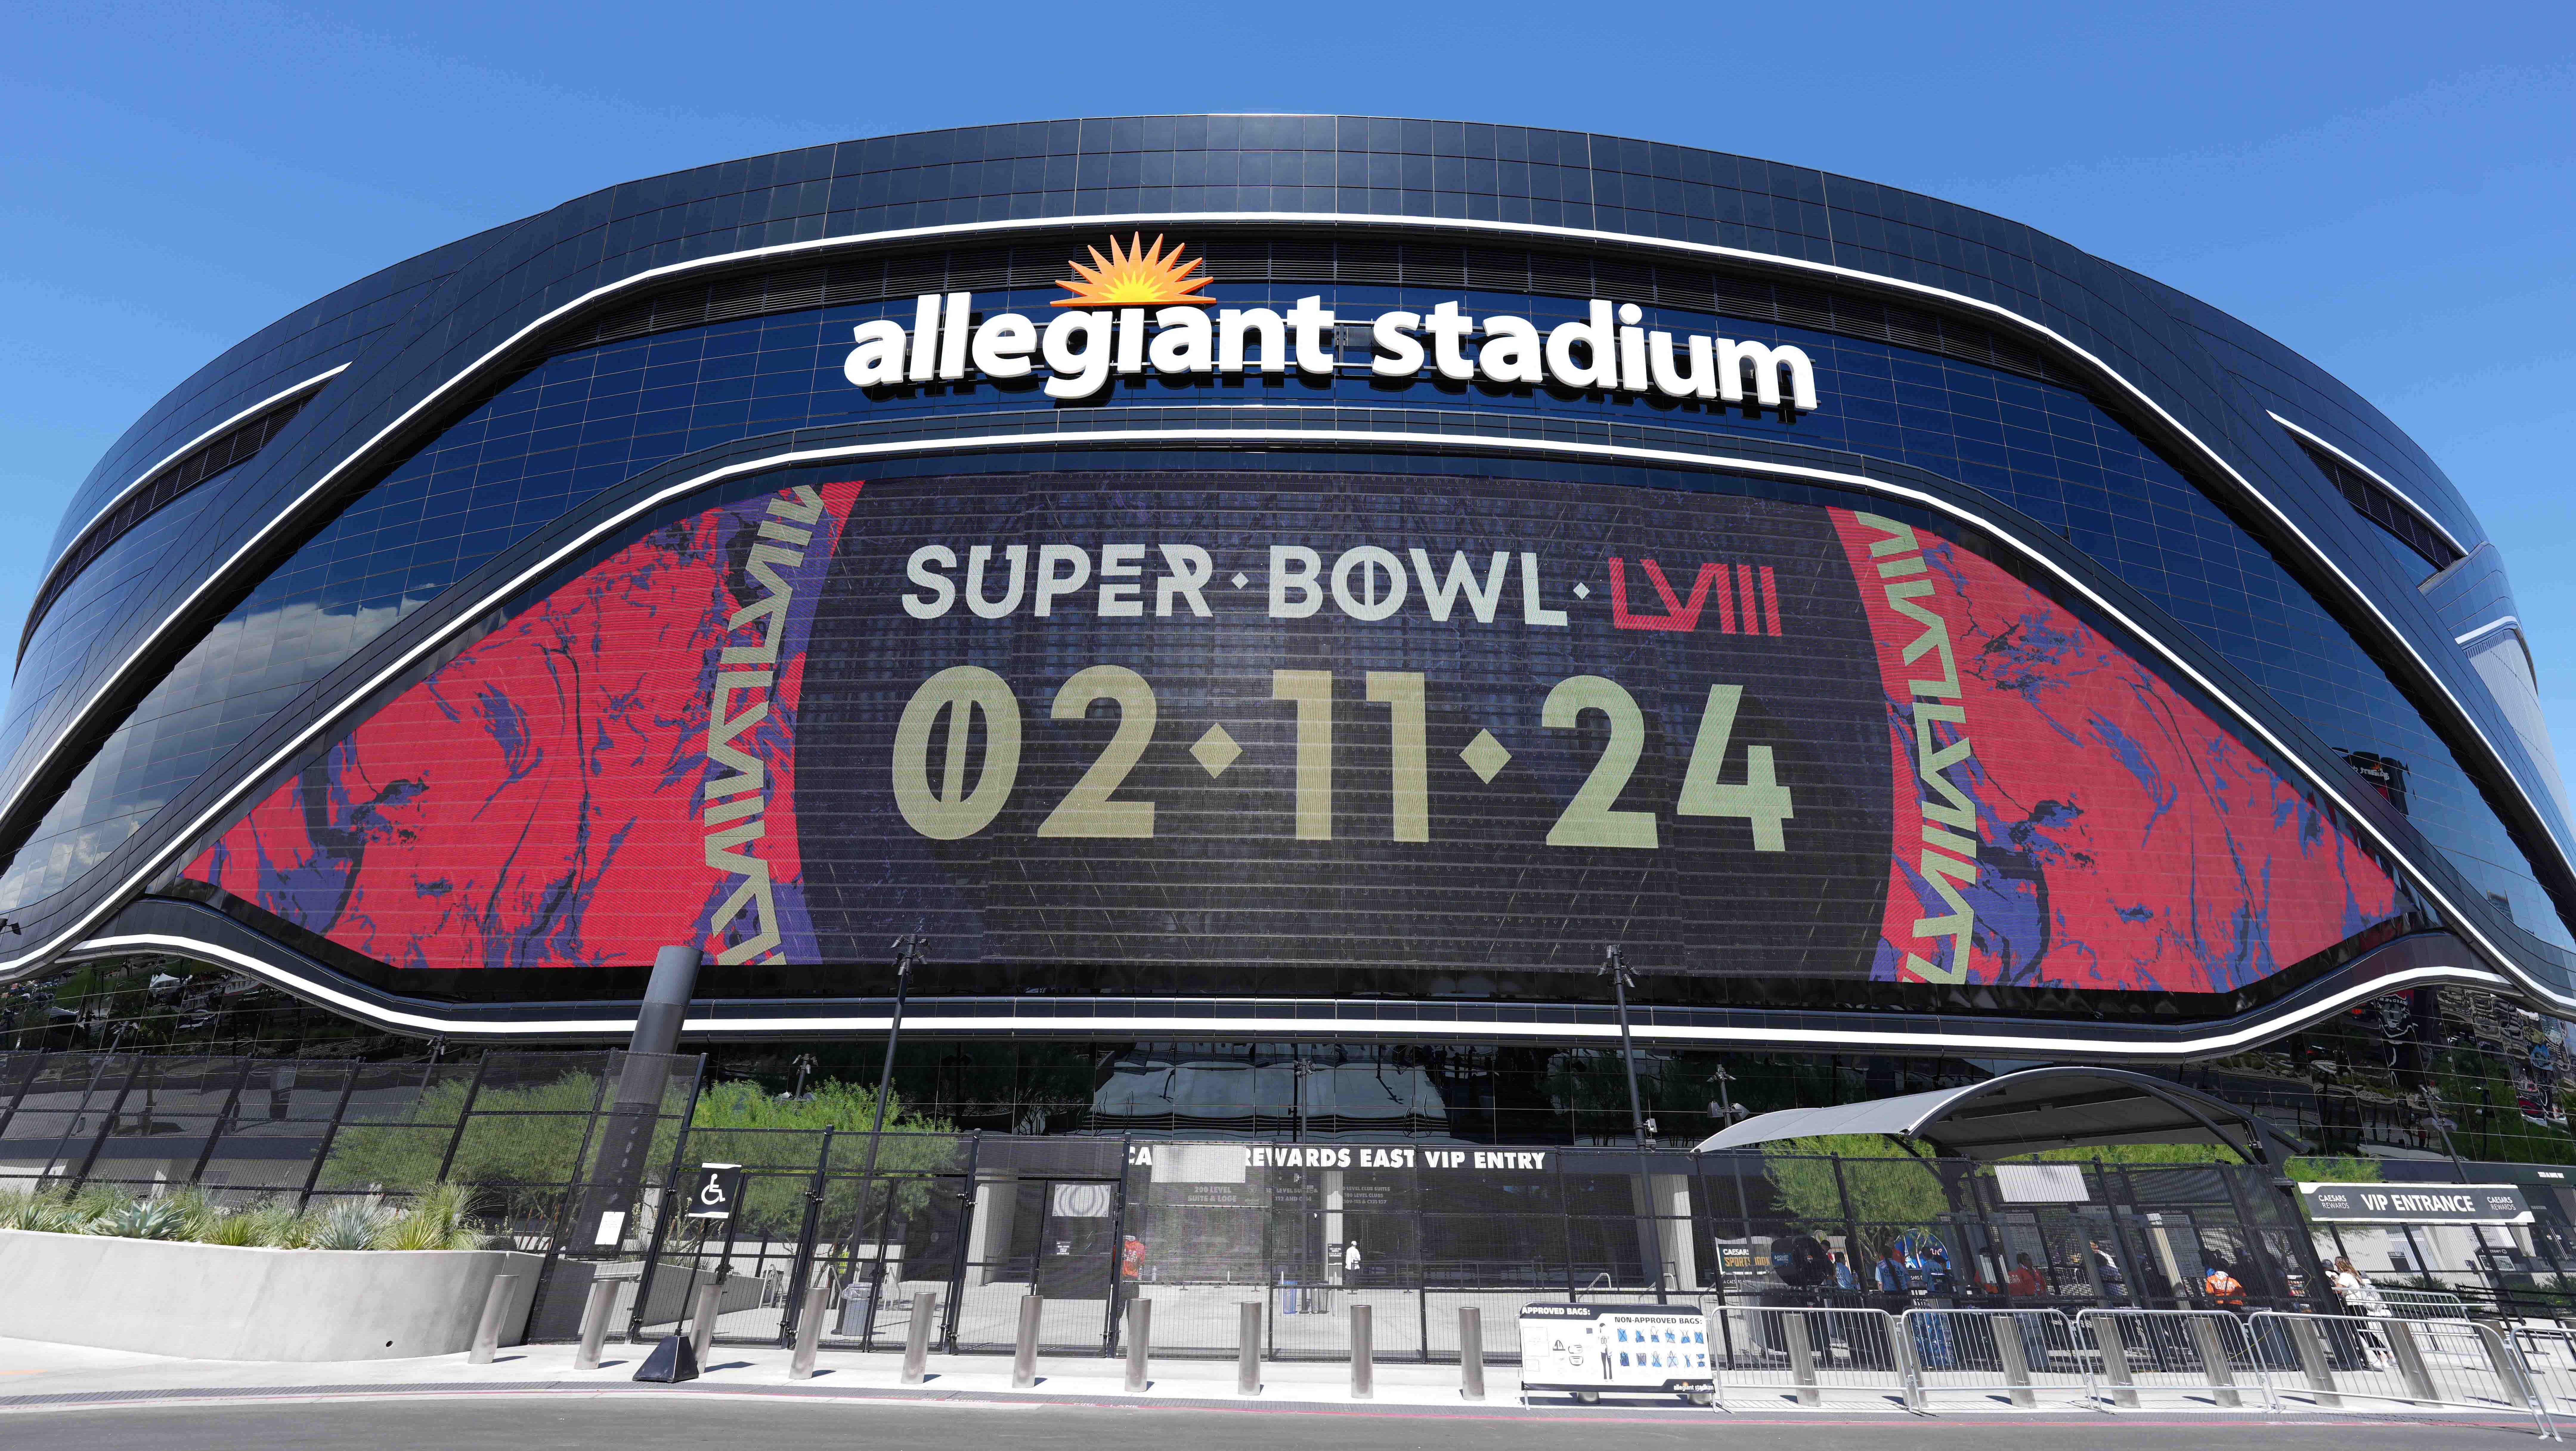 The Super Bowl LVIII (Super Bowl 58) logo on the Allegiant Stadium marquee